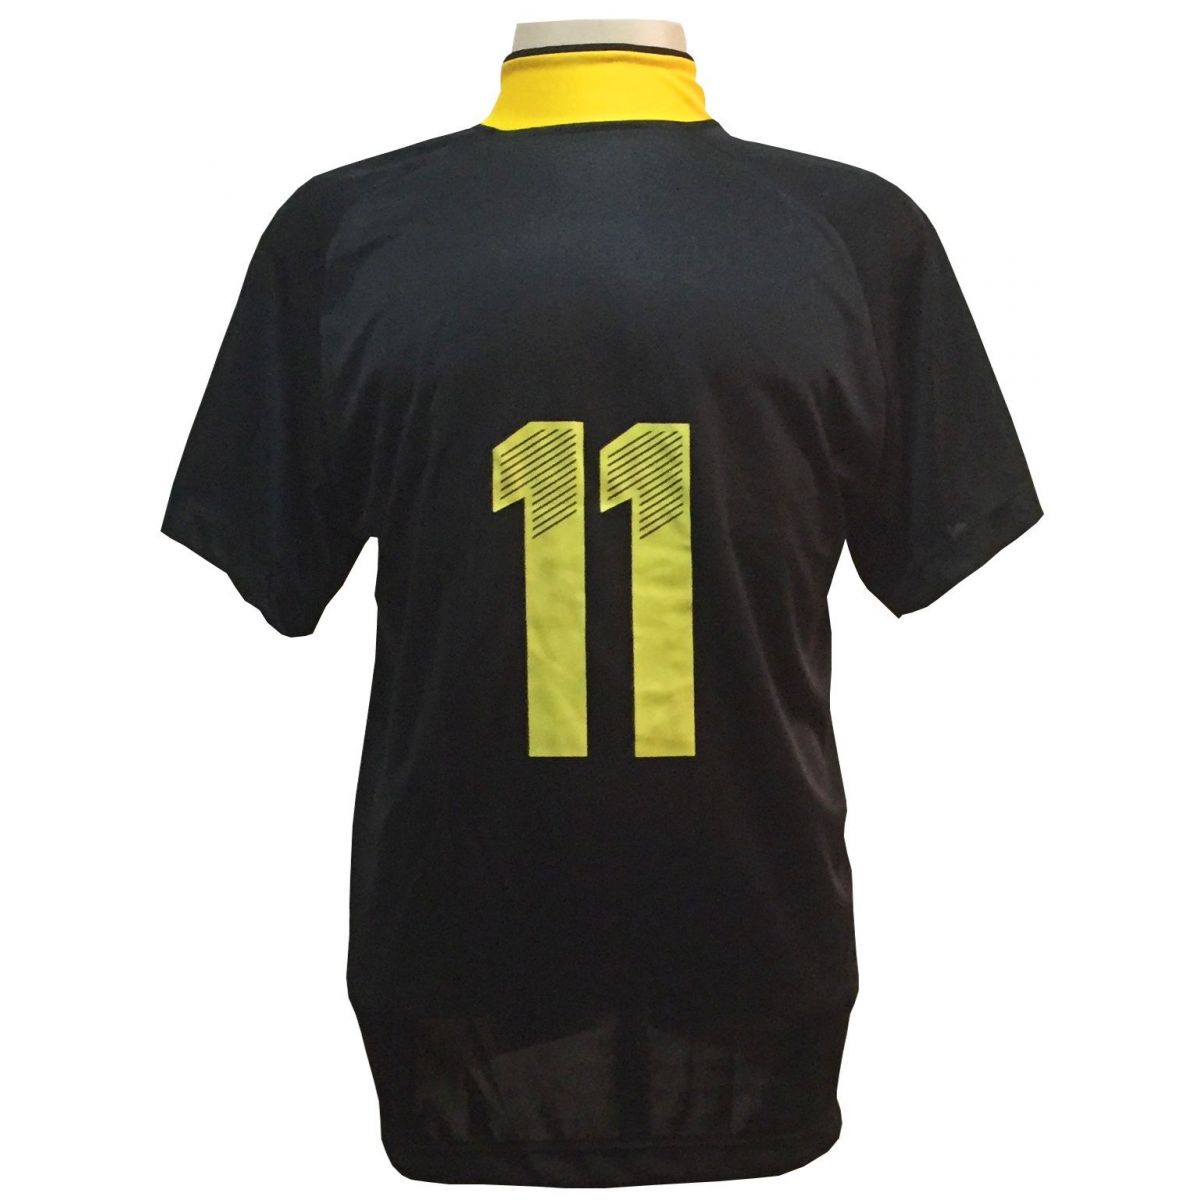 Jogo de Camisa com 12 unidades modelo Milan Preto/Amarelo + 1 Goleiro + Brindes